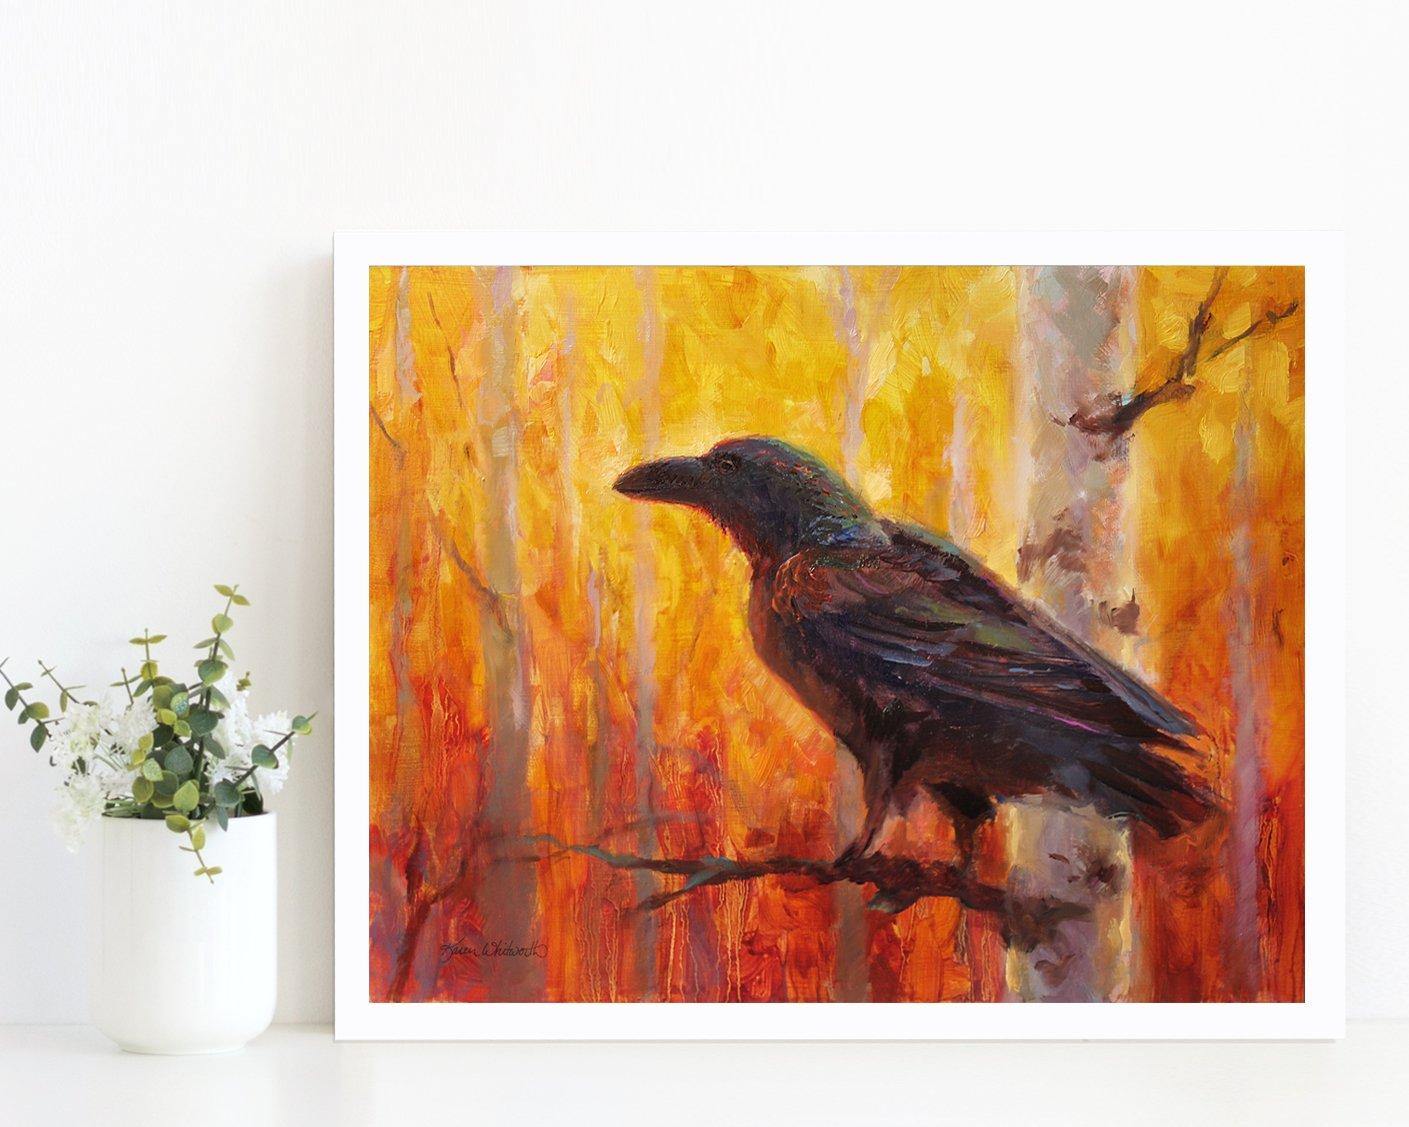 11x14 Autumn Raven Art Print of bird in forest by Alaska Artist Karen Whitworth 